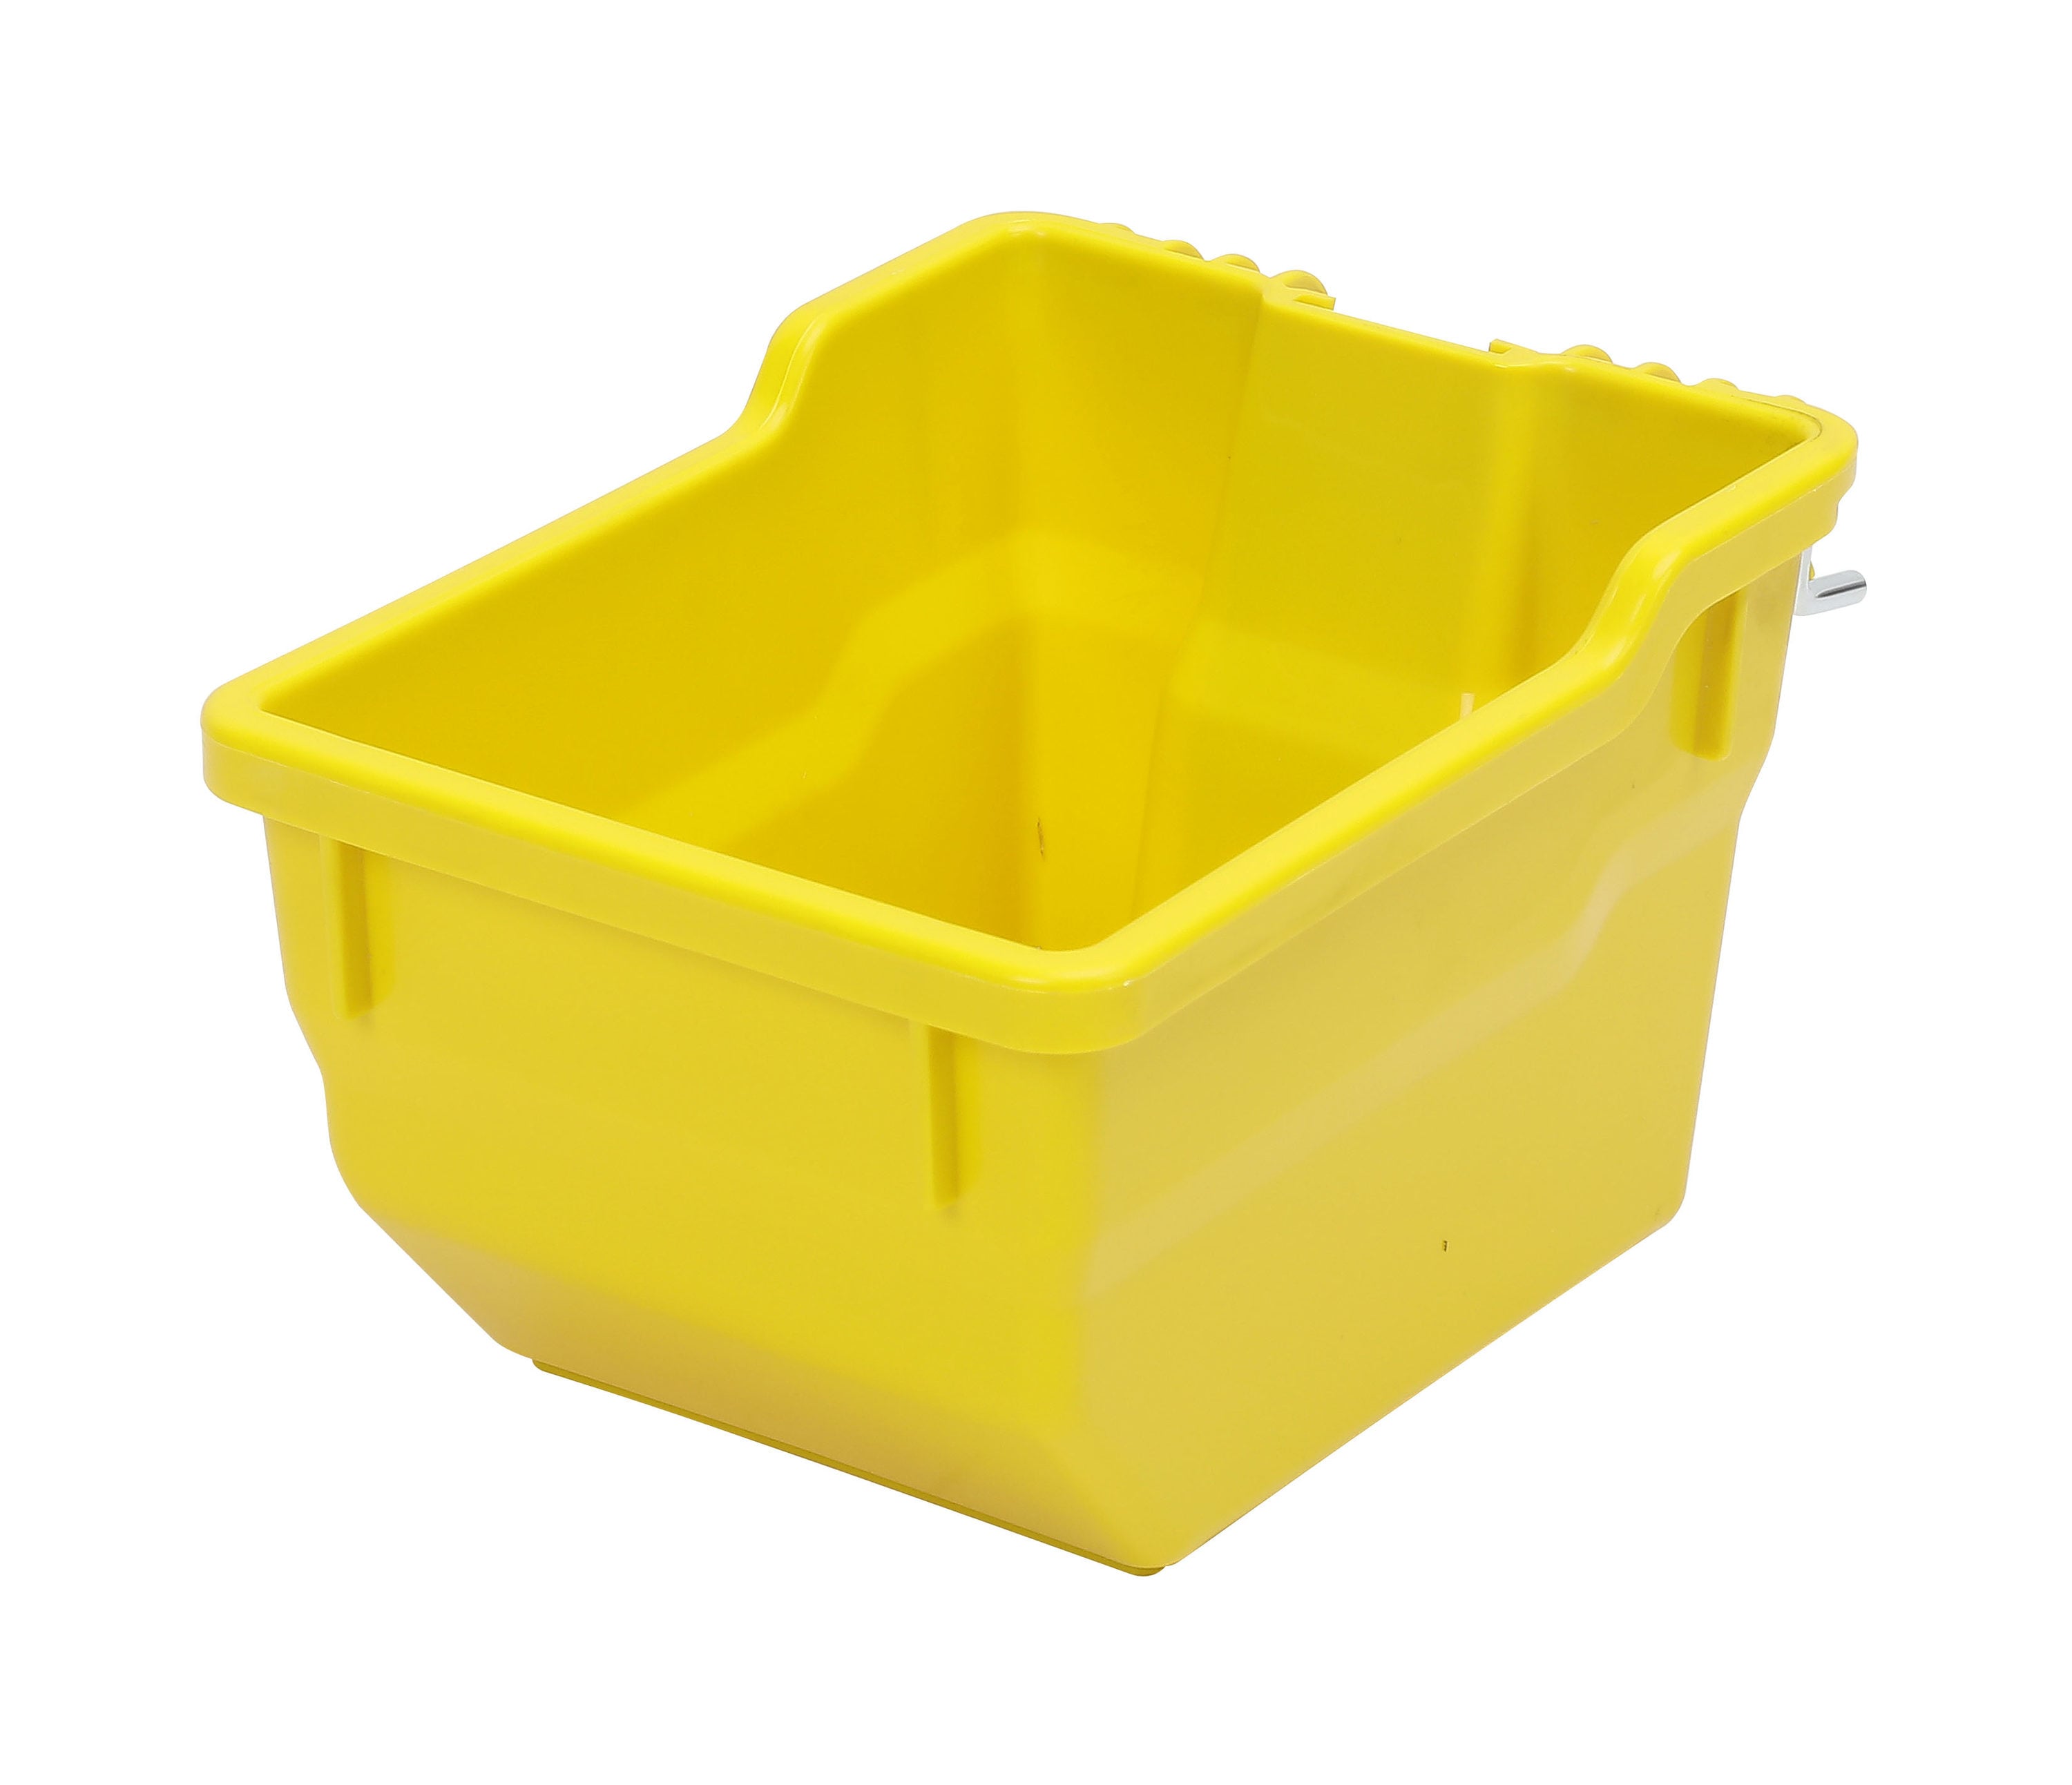 Plastic Bin Basket